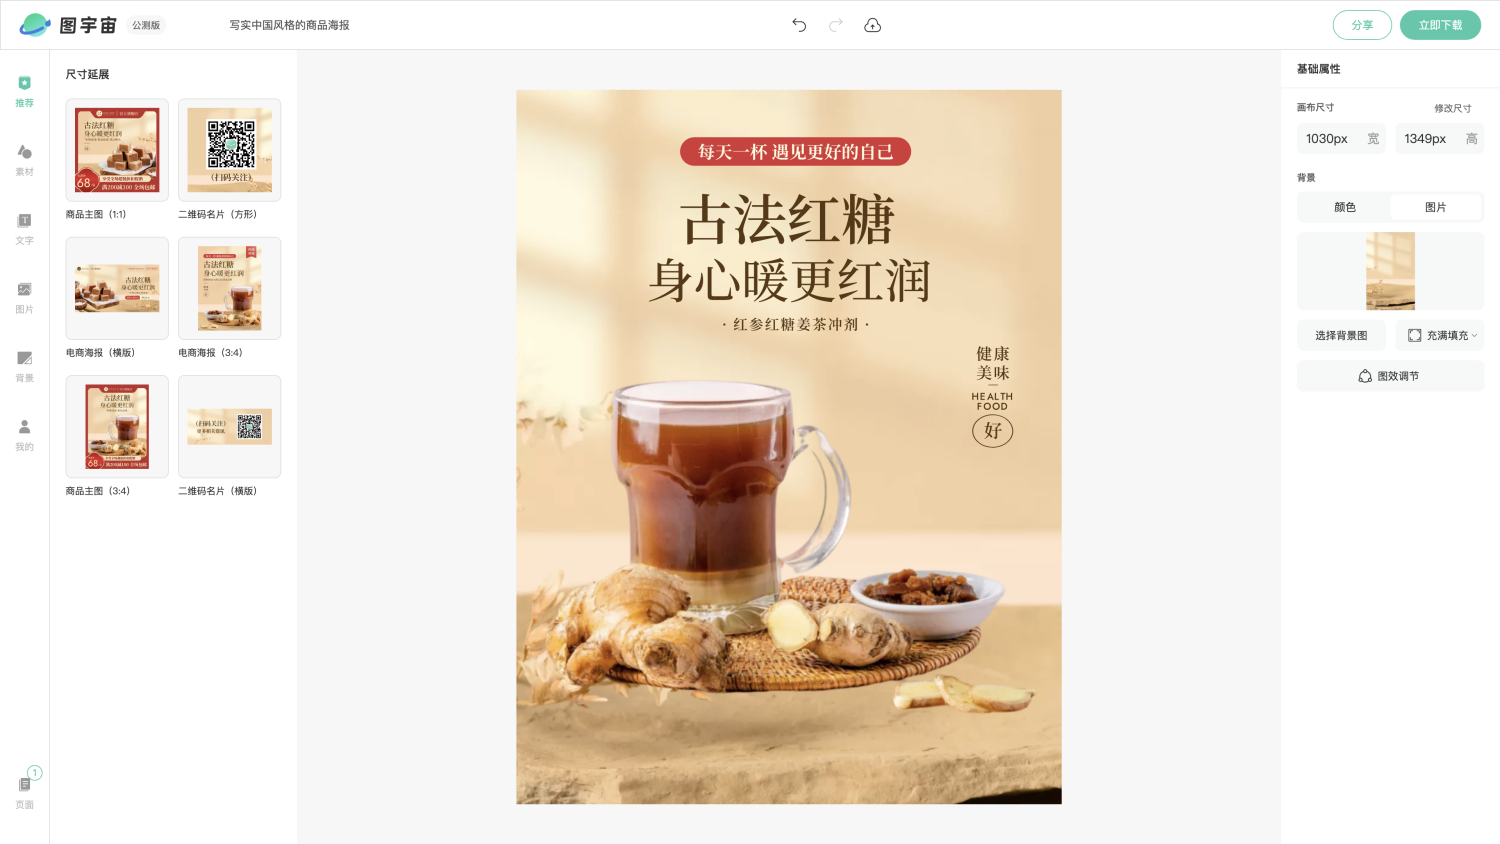 图宇宙-编辑器-写实中国风格的商品海报